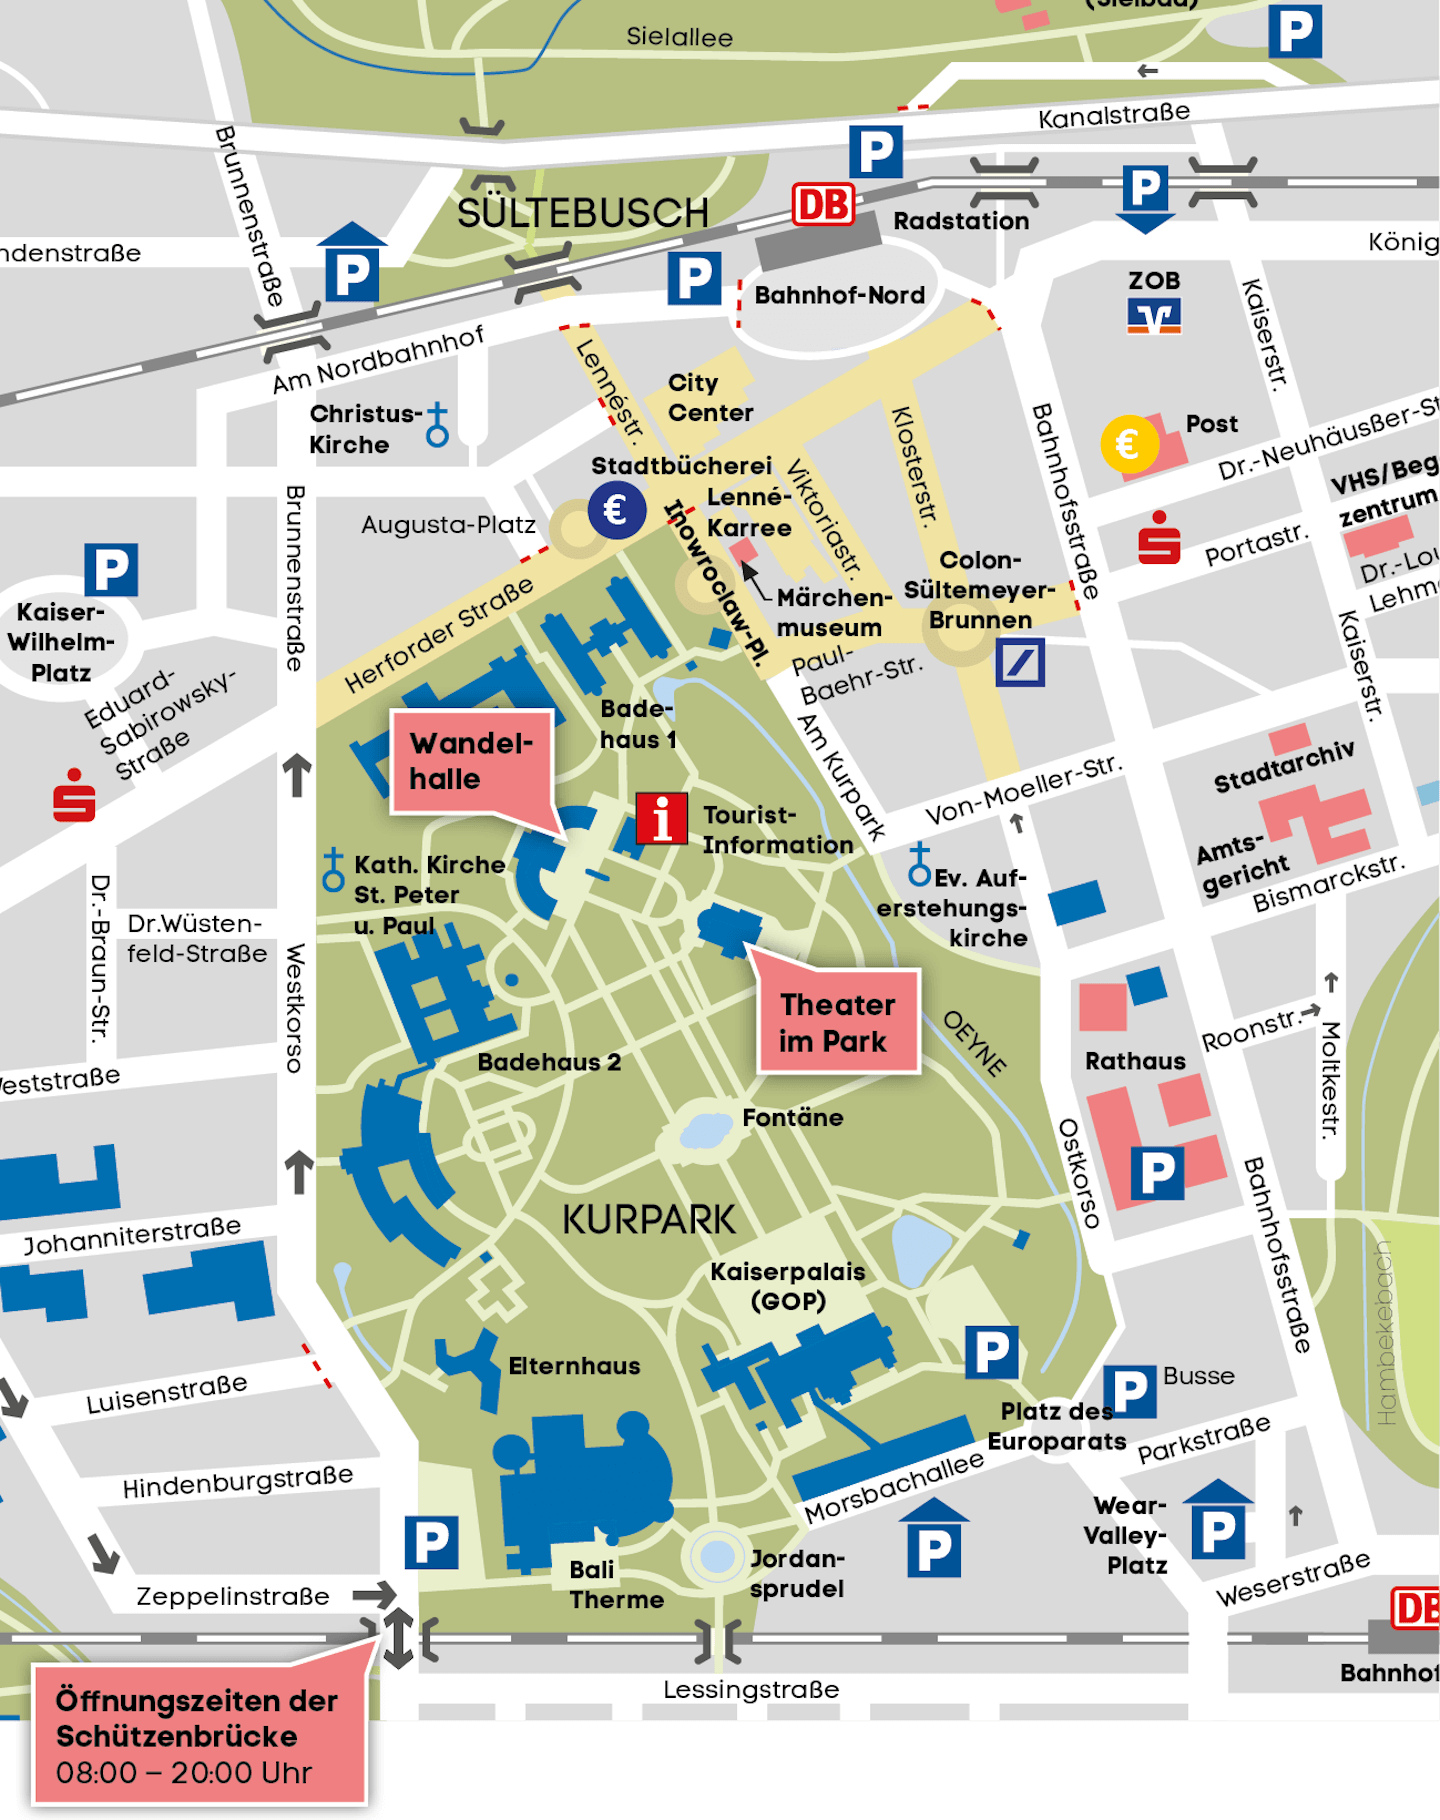 Plan des Kurparks und der Innenstadt mit allen Sehenswürdigkeiten